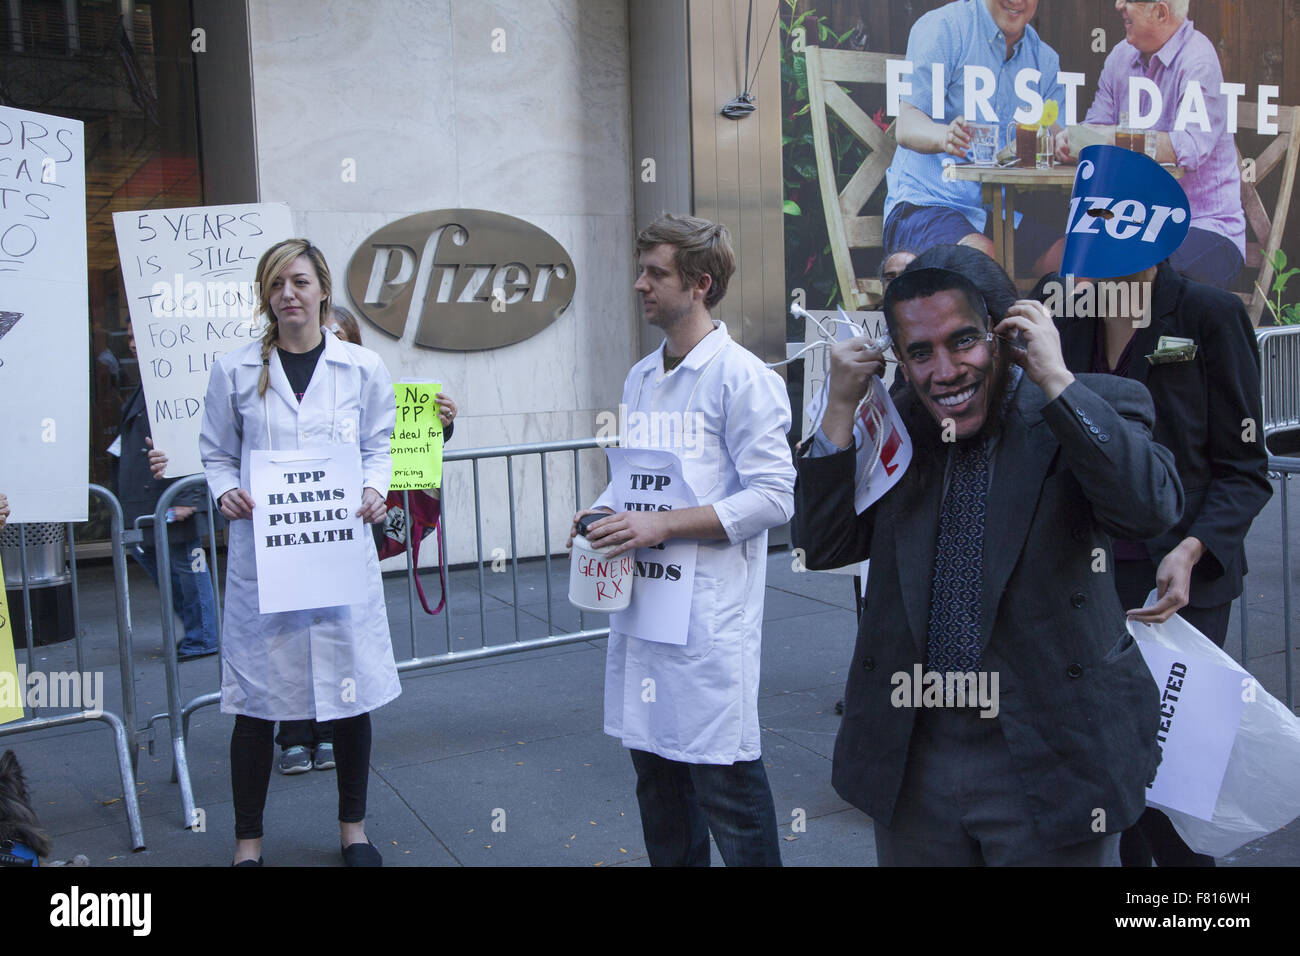 Médicos y estudiantes de medicina se manifiestan frente a la sede de Pfizer En Manhattan contra el acuerdo comercial de la Asociación Transpacífico Foto de stock